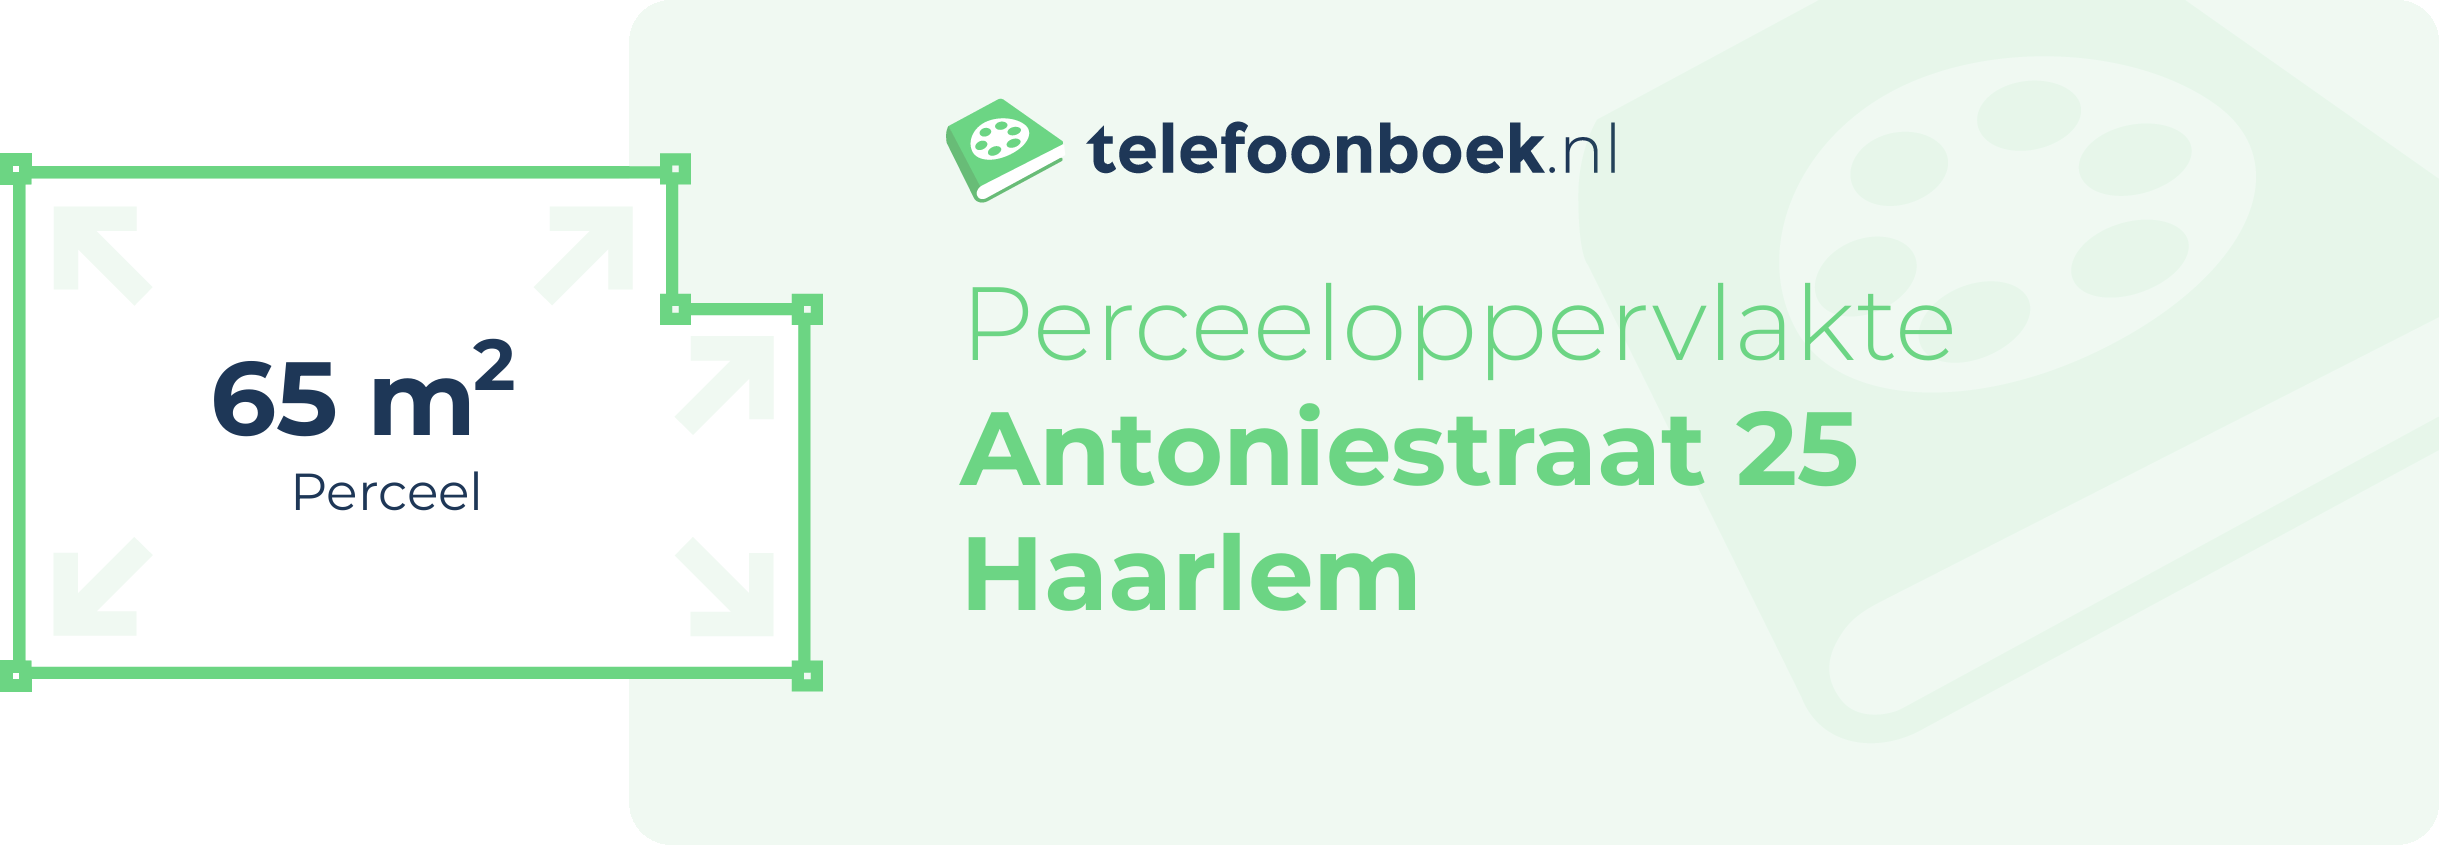 Perceeloppervlakte Antoniestraat 25 Haarlem